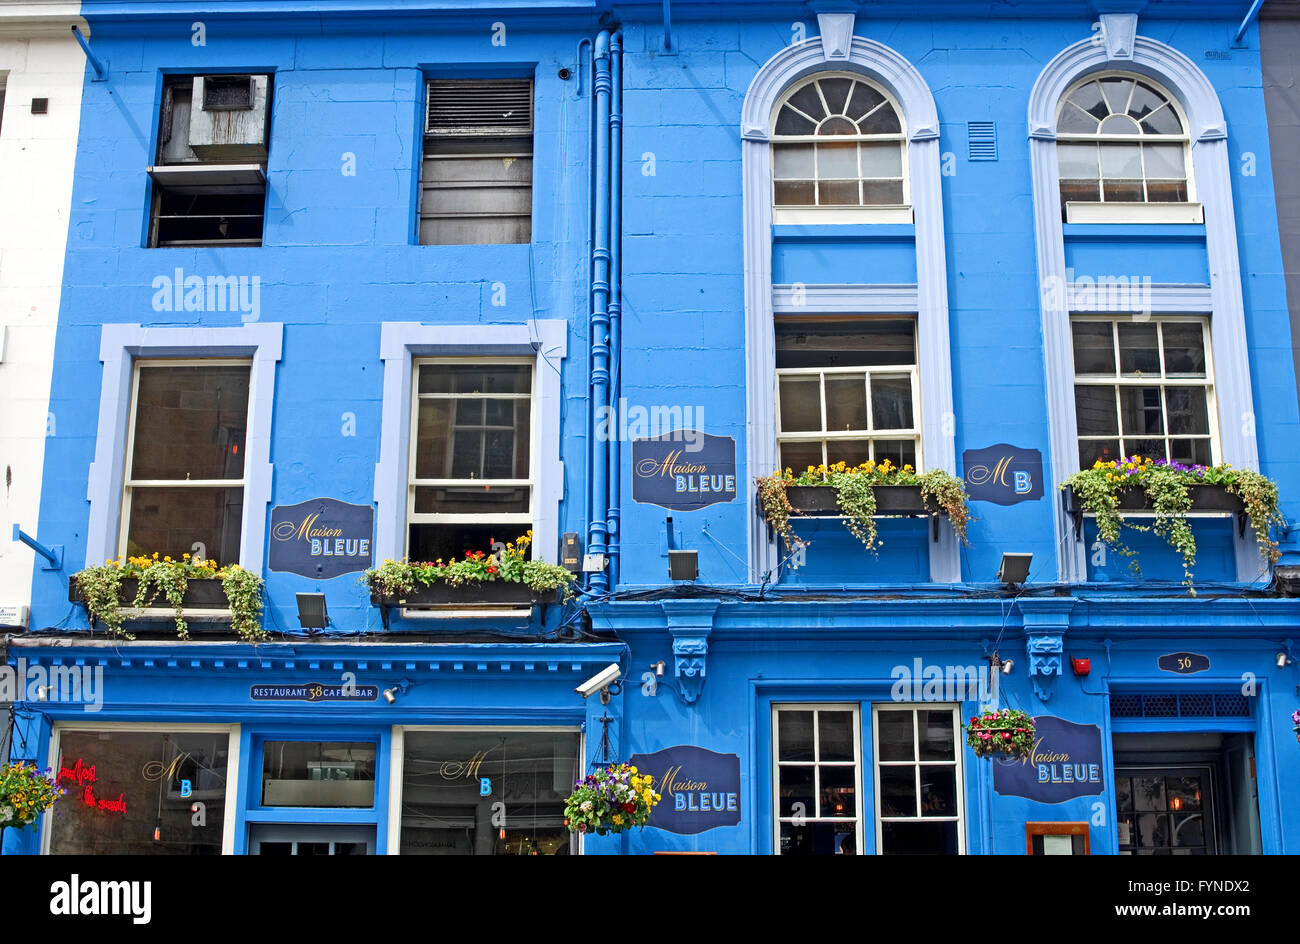 Detalle de la fachada de la 'Maison Bleue" Restaurante y cafetería de la Calle Victoria, el casco antiguo de Edimburgo, Escocia, Reino Unido Foto de stock